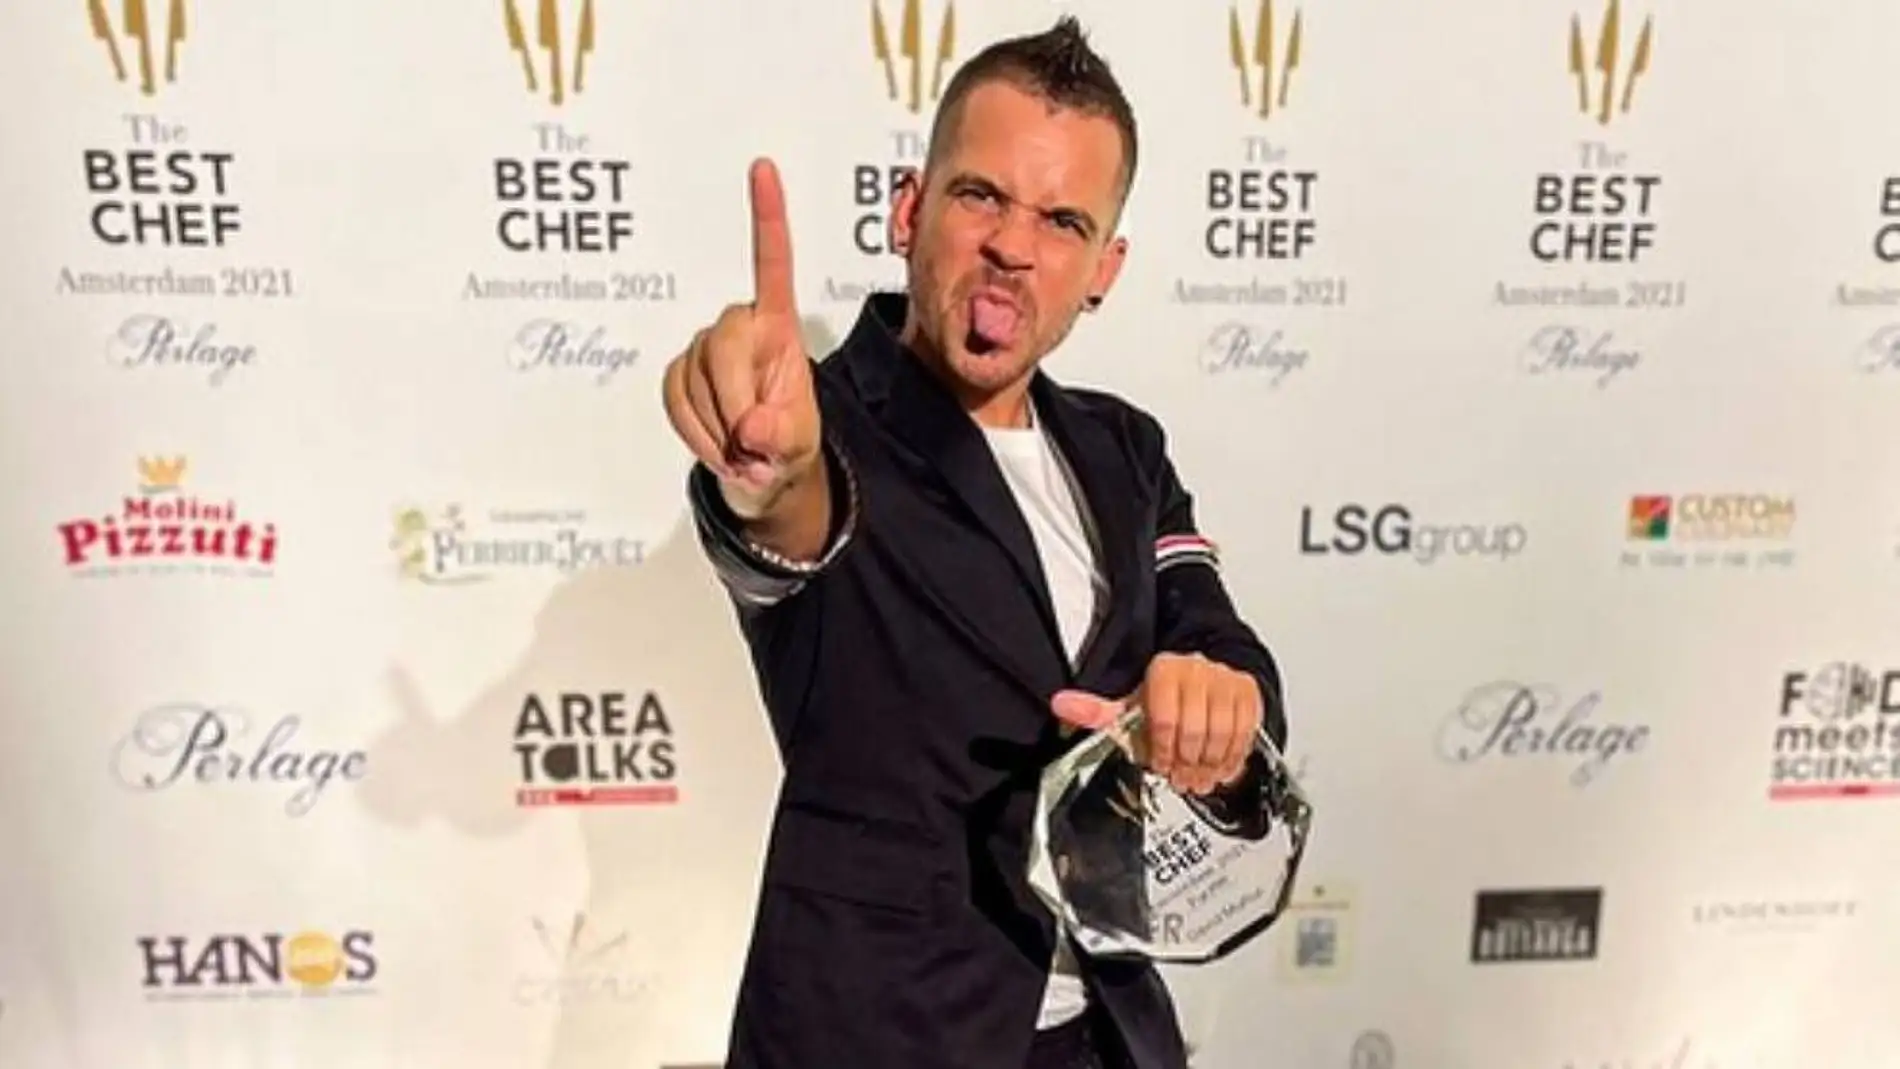 Dabiz Muñoz, el mejor cocinero del mundo según 'The Best Chef Awards 2021'